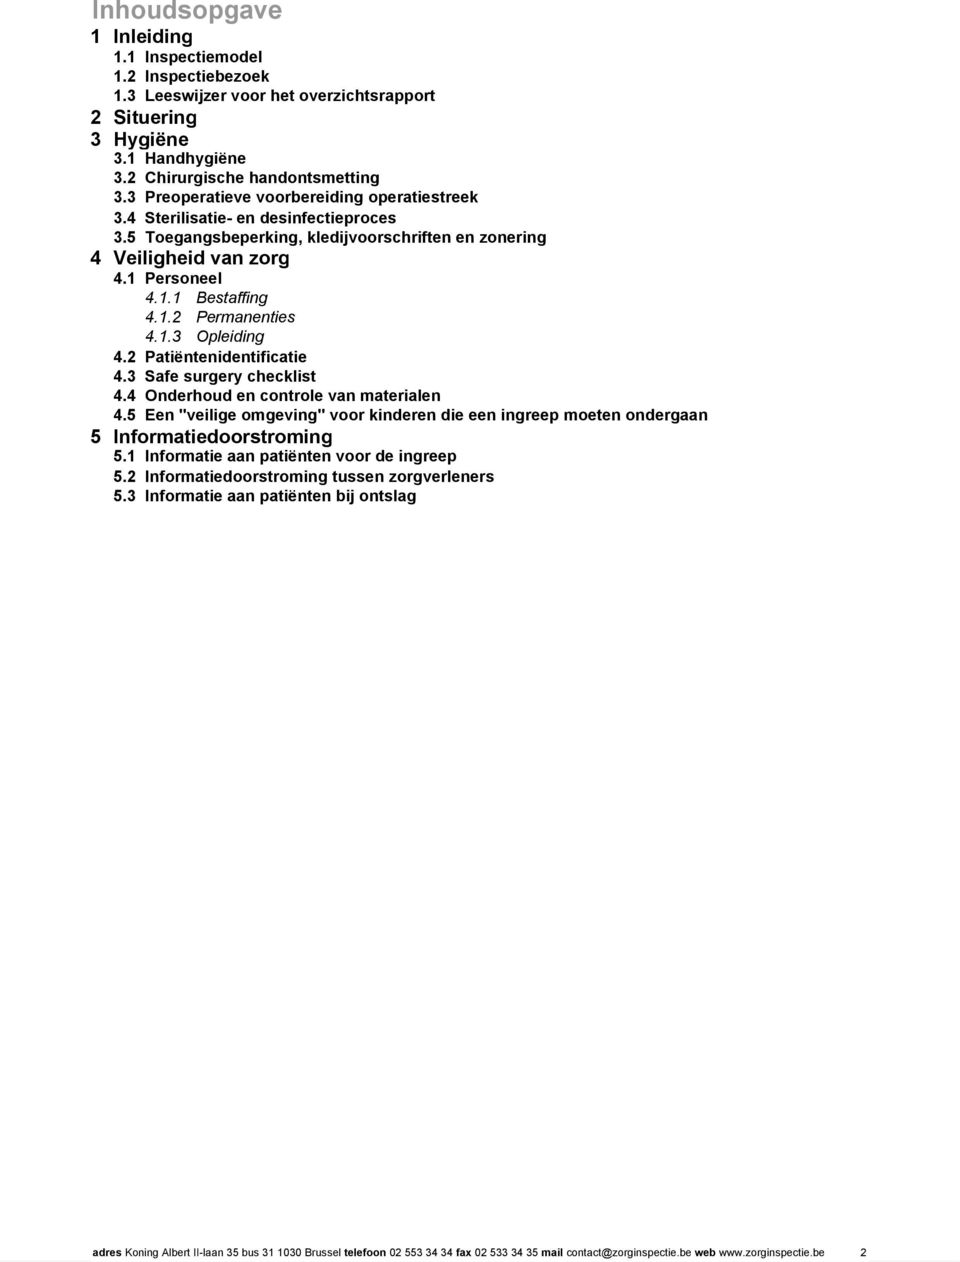 1.3 Opleiding 4.2 Patiëntenidentificatie 4.3 Safe surgery checklist 4.4 Onderhoud en controle van materialen 4.